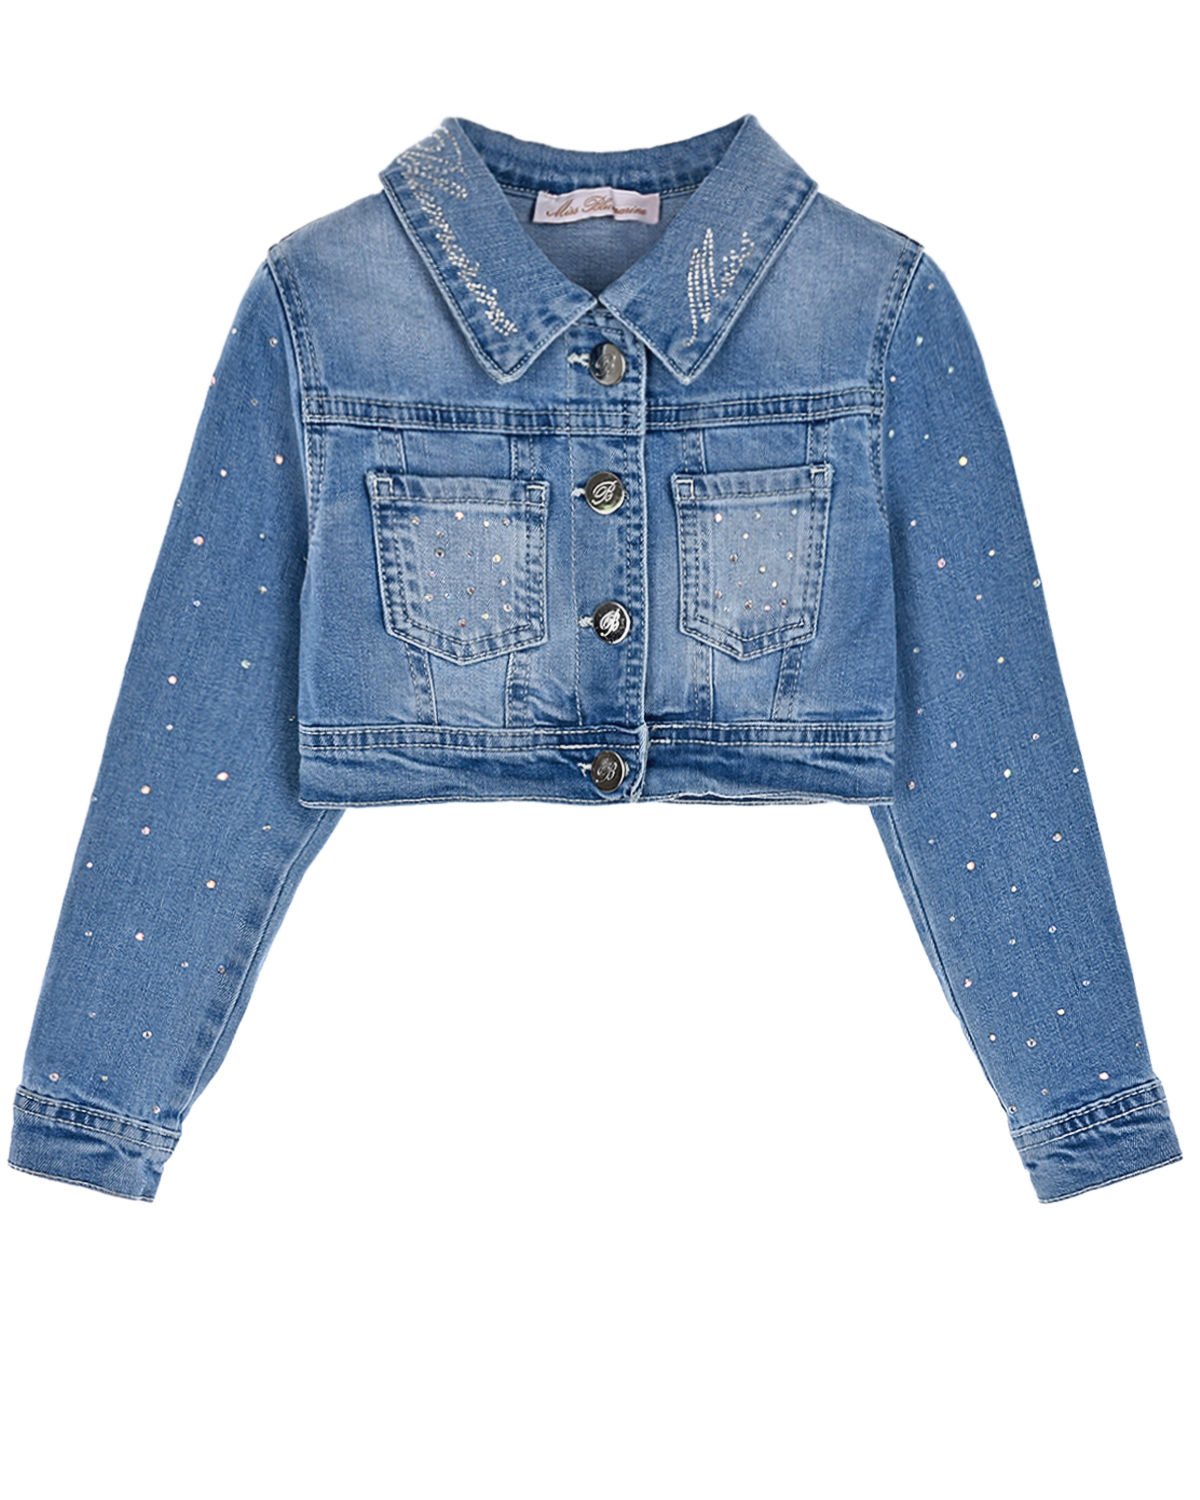 Укороченная джинсовая куртка с бусинами Miss Blumarine детская, размер 92, цвет синий